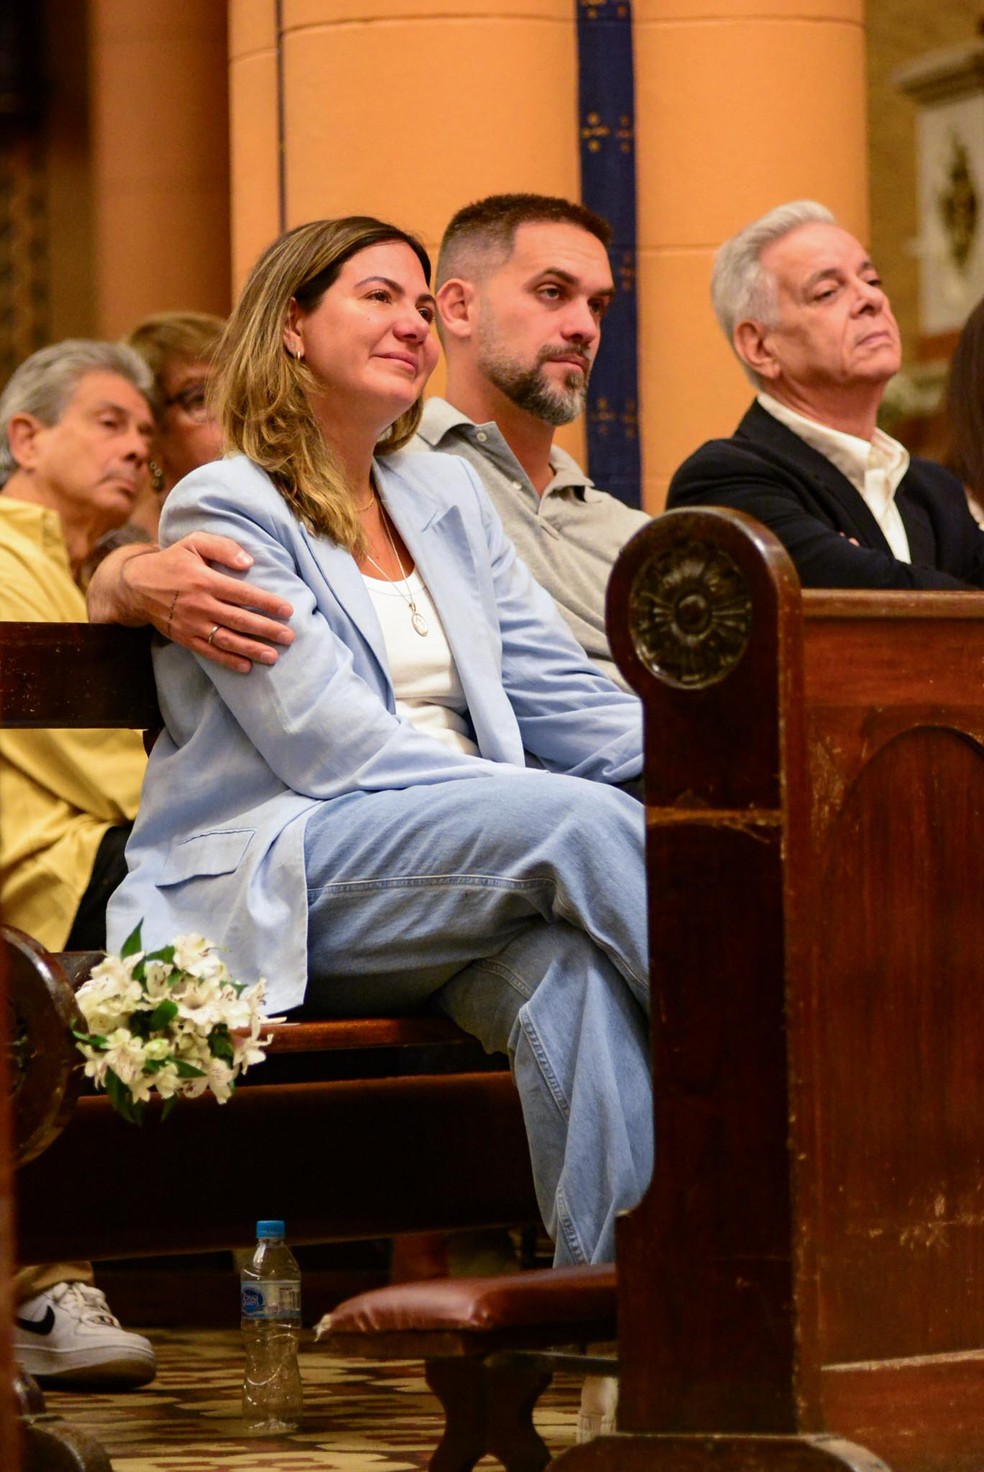 Carol Sampaio se emociona na missa de sétimo dia da mãe, Marly Sampaio — Foto: Webert Belicio/AgNews